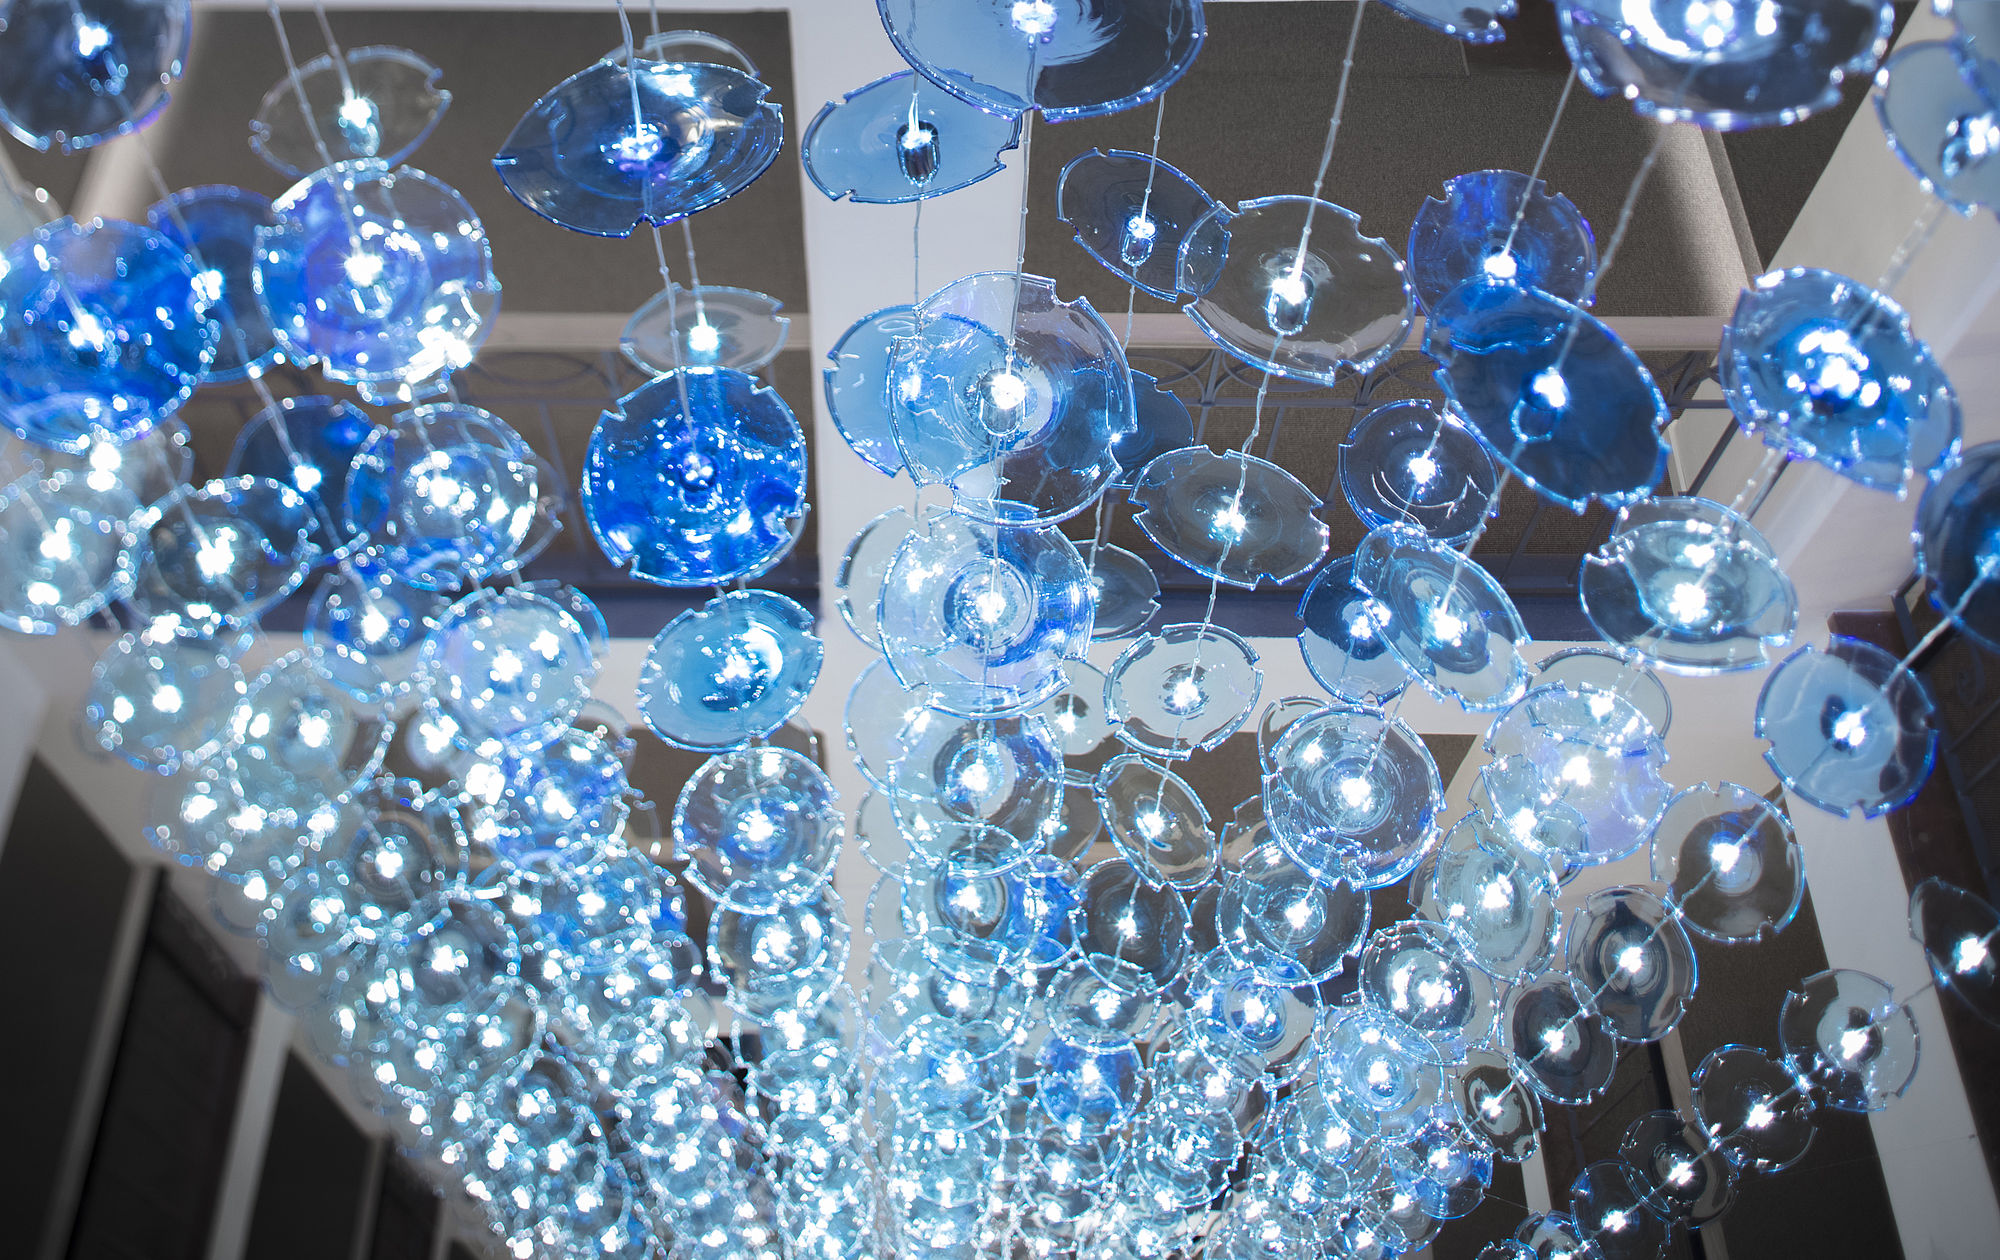 Glaskunst aus blauen Glasplatten, die an Schnüren angebracht sind und das Licht spiegeln